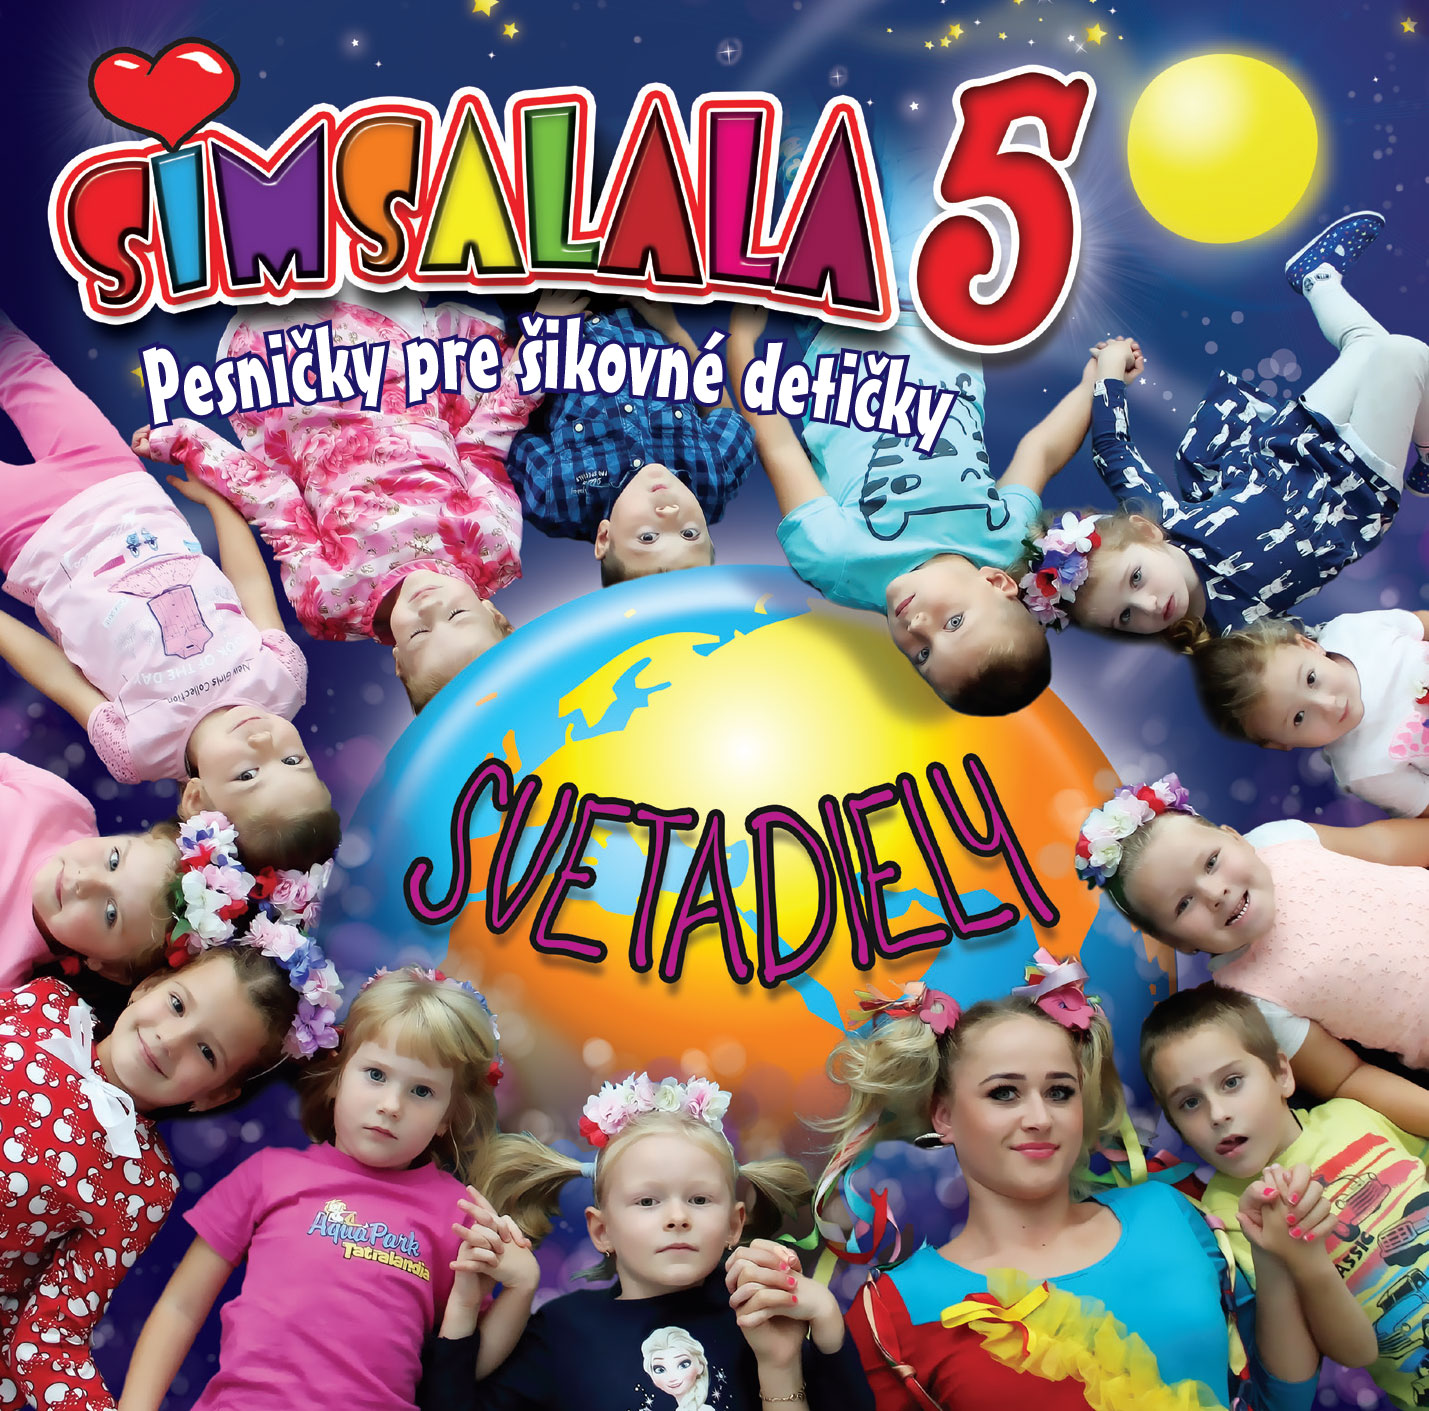 Simsalala - Pesničky pre šikovné detičky 5. - Svetadiely (cd)